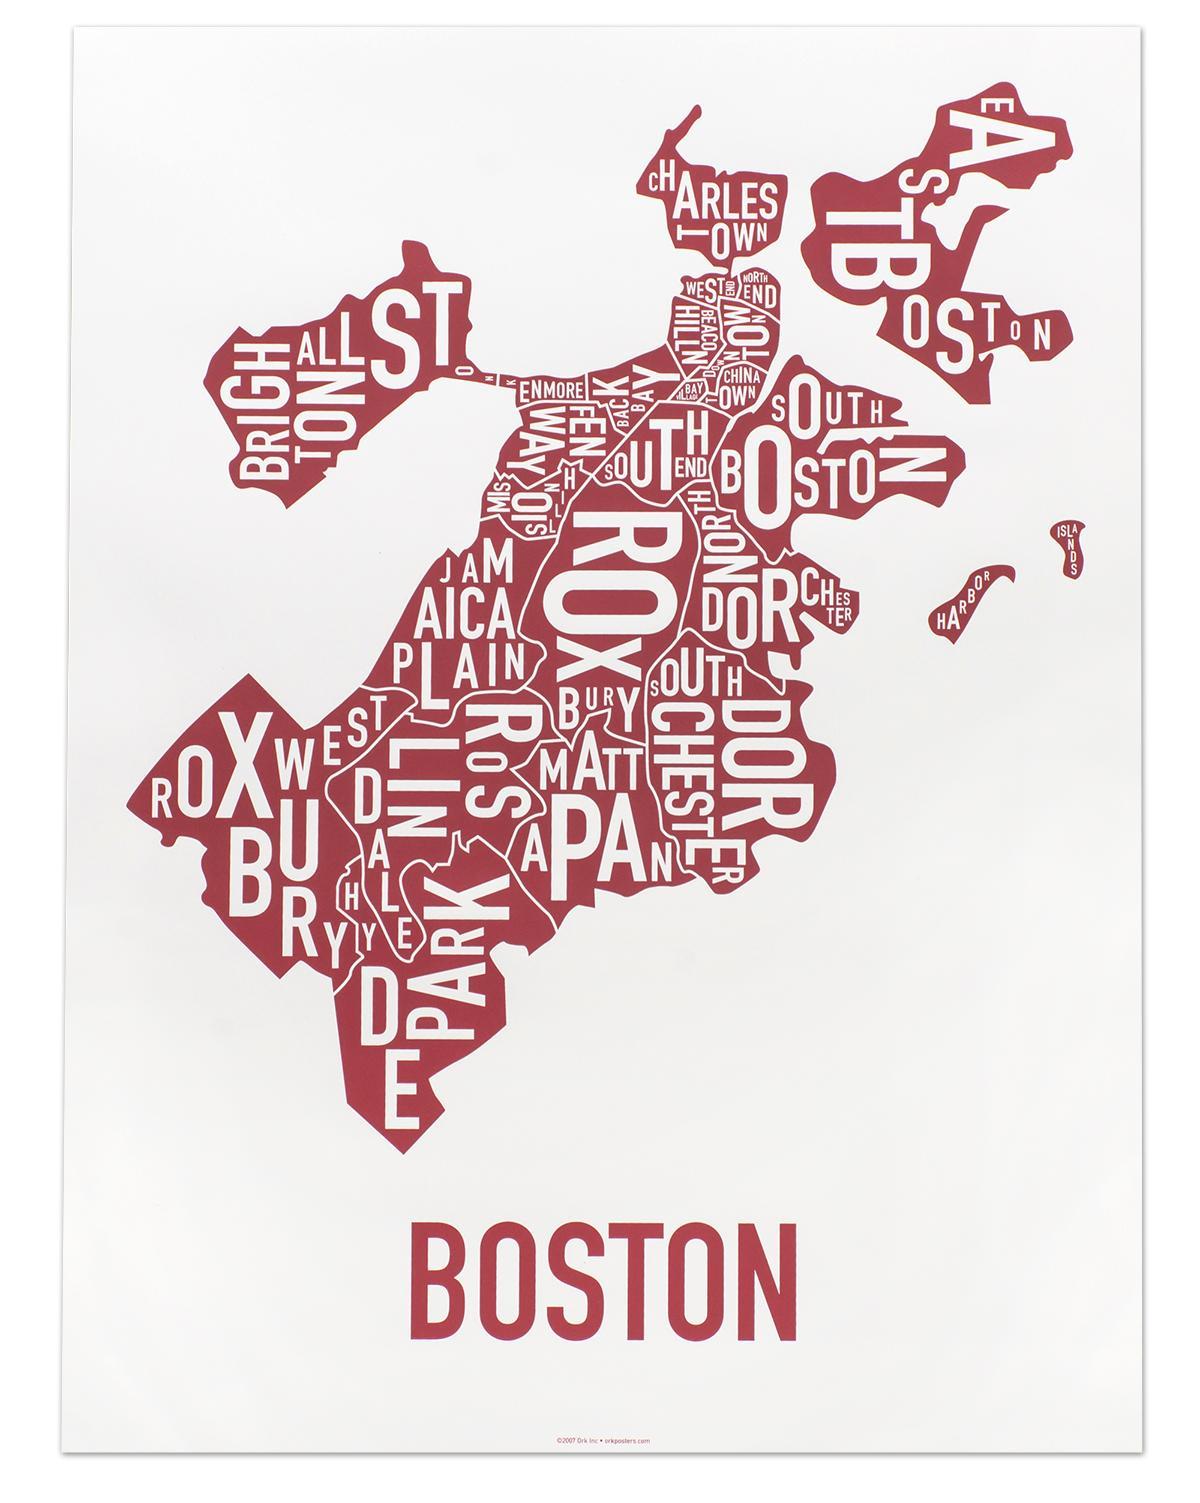 બોસ્ટન શહેરમાં નકશો